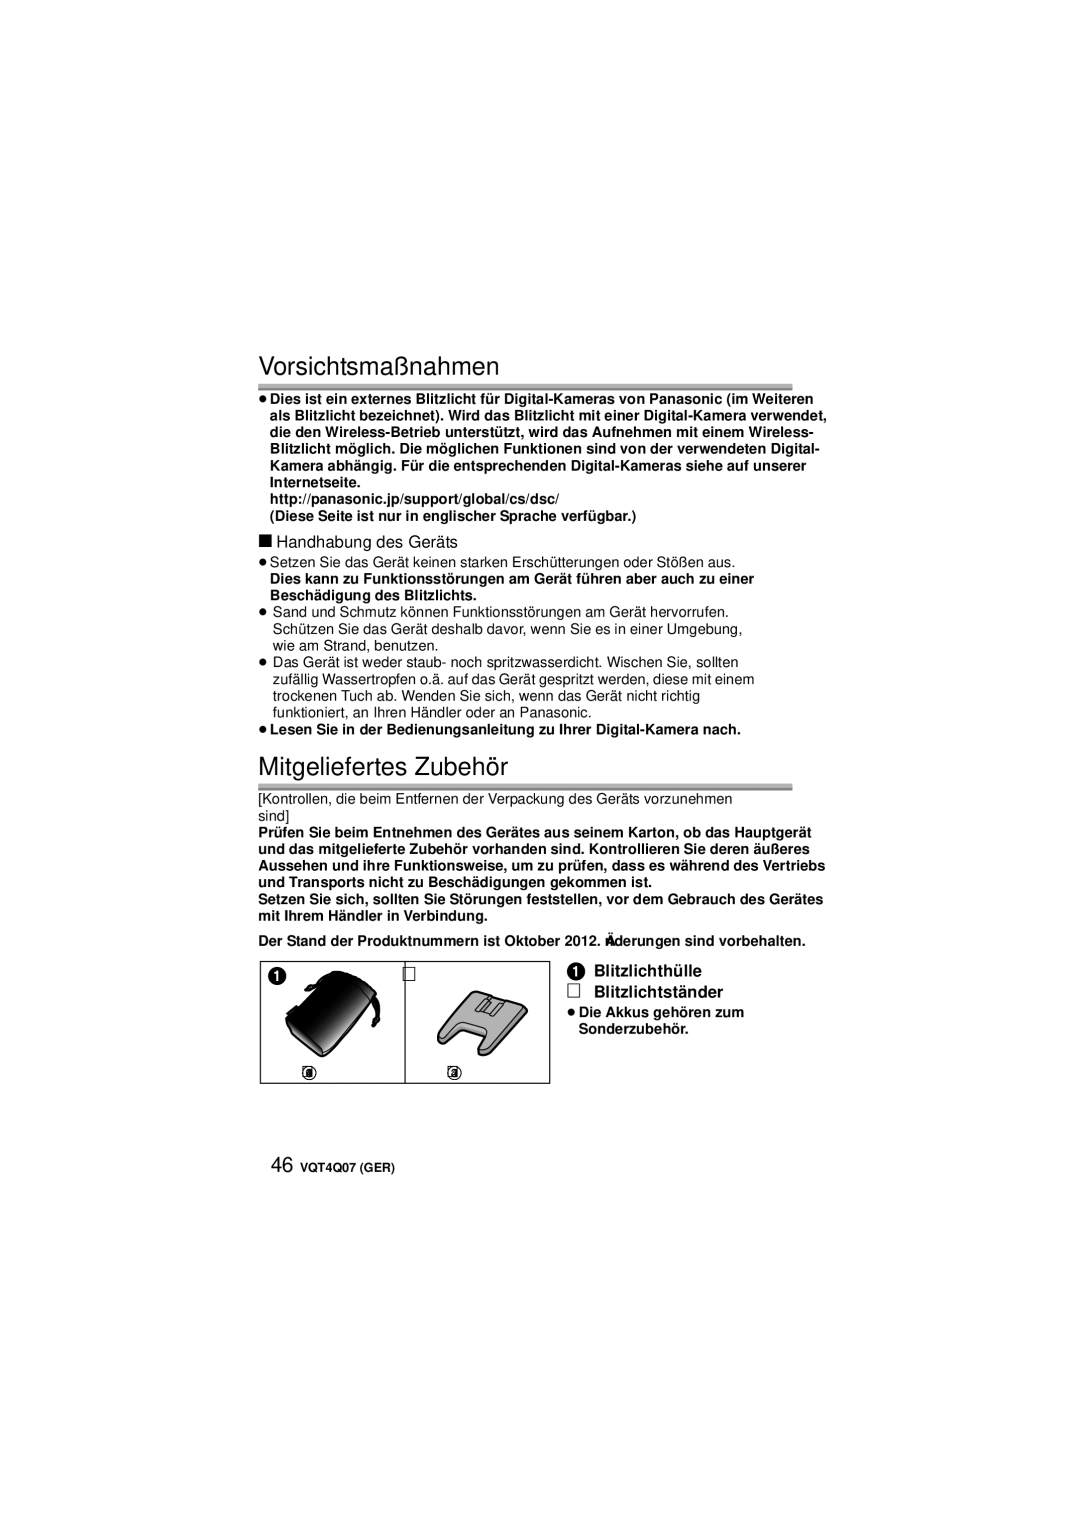 Panasonic DMW-FL360L operating instructions Vorsichtsmaßnahmen, Mitgeliefertes Zubehör, Handhabung des Geräts 